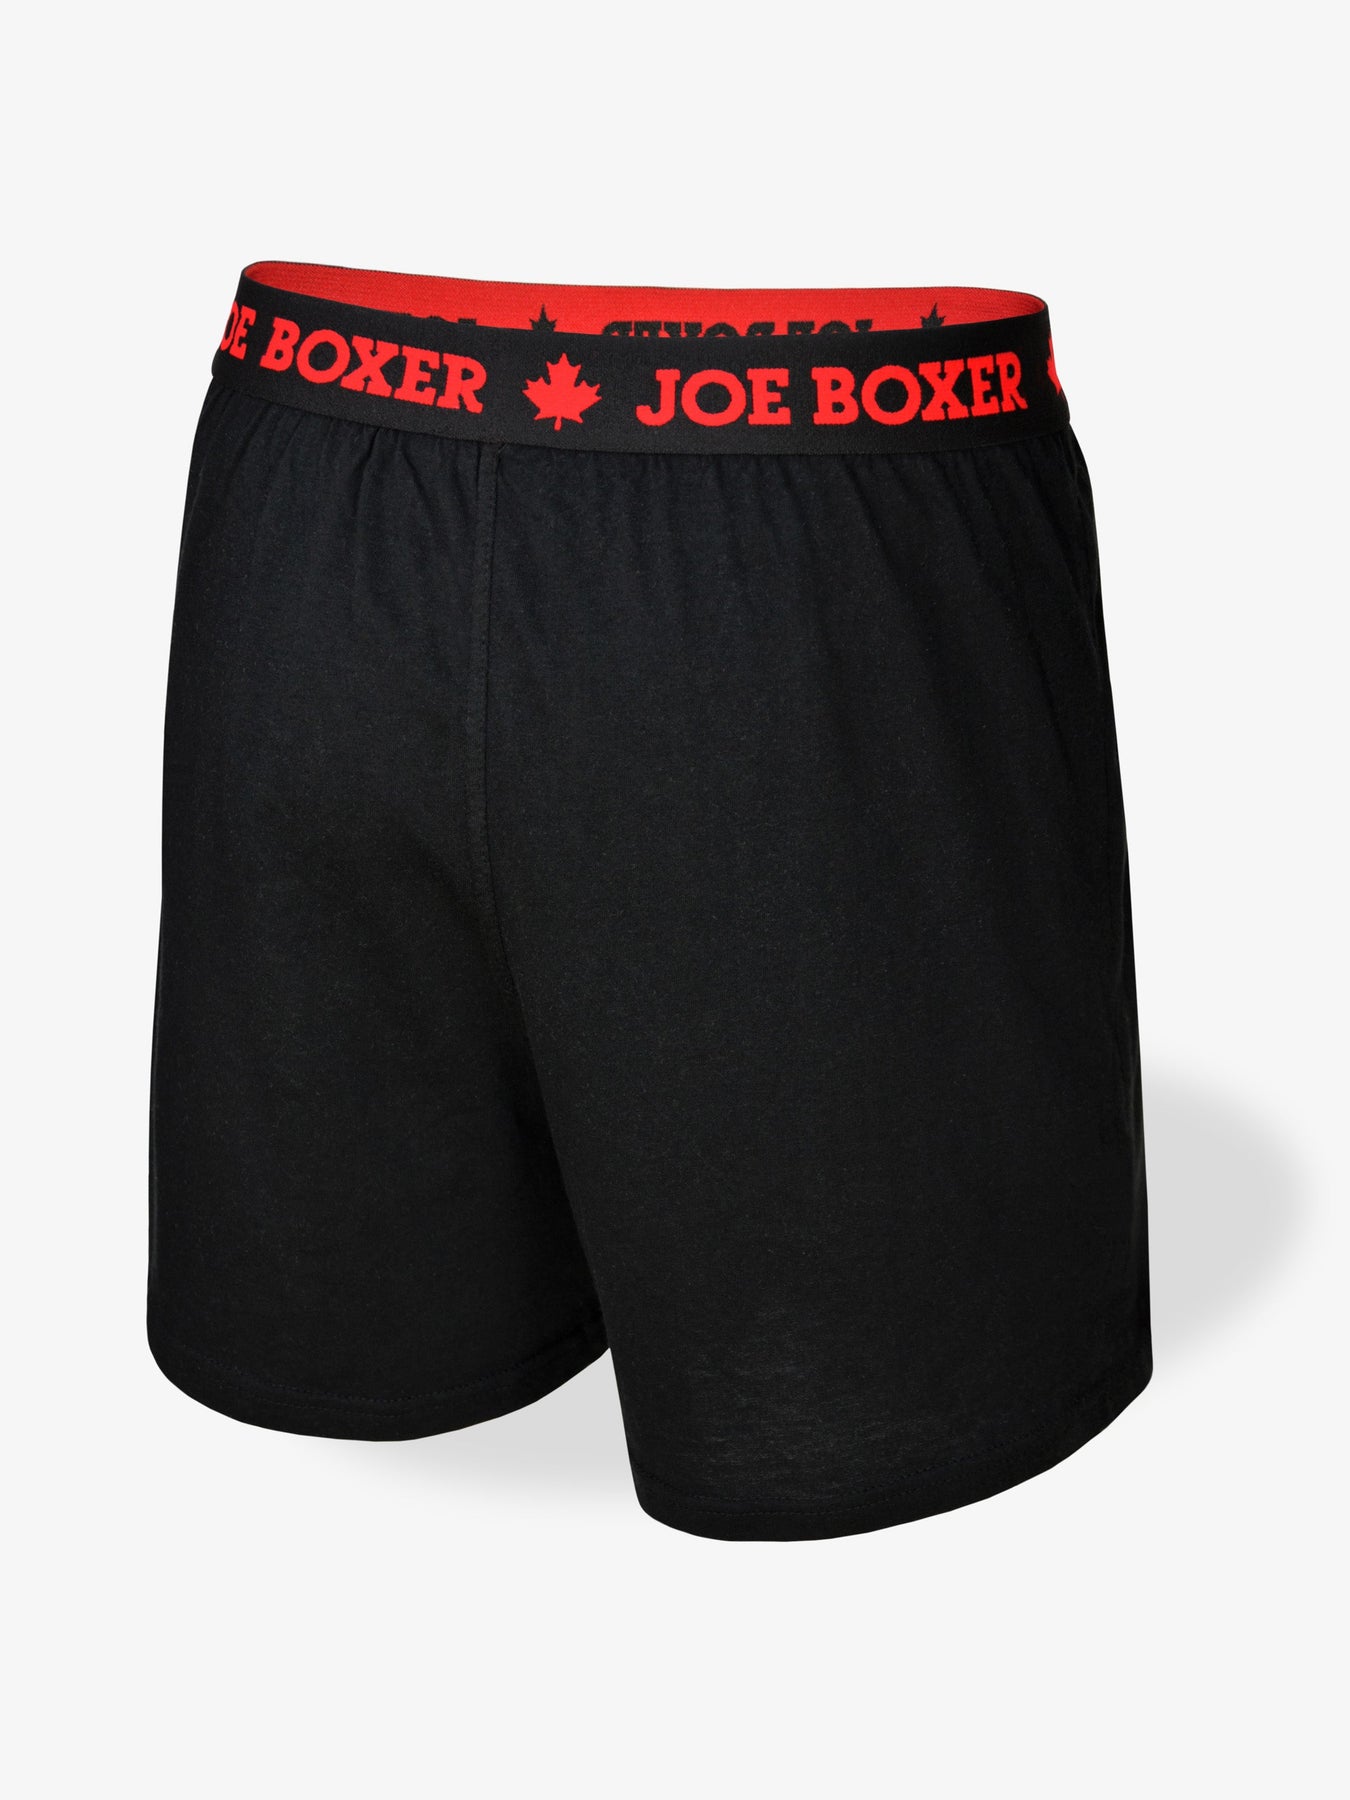 Man Hole, Men's Boxer Briefs, Gag Gift, Fundies, Undies, Underwear -   Canada